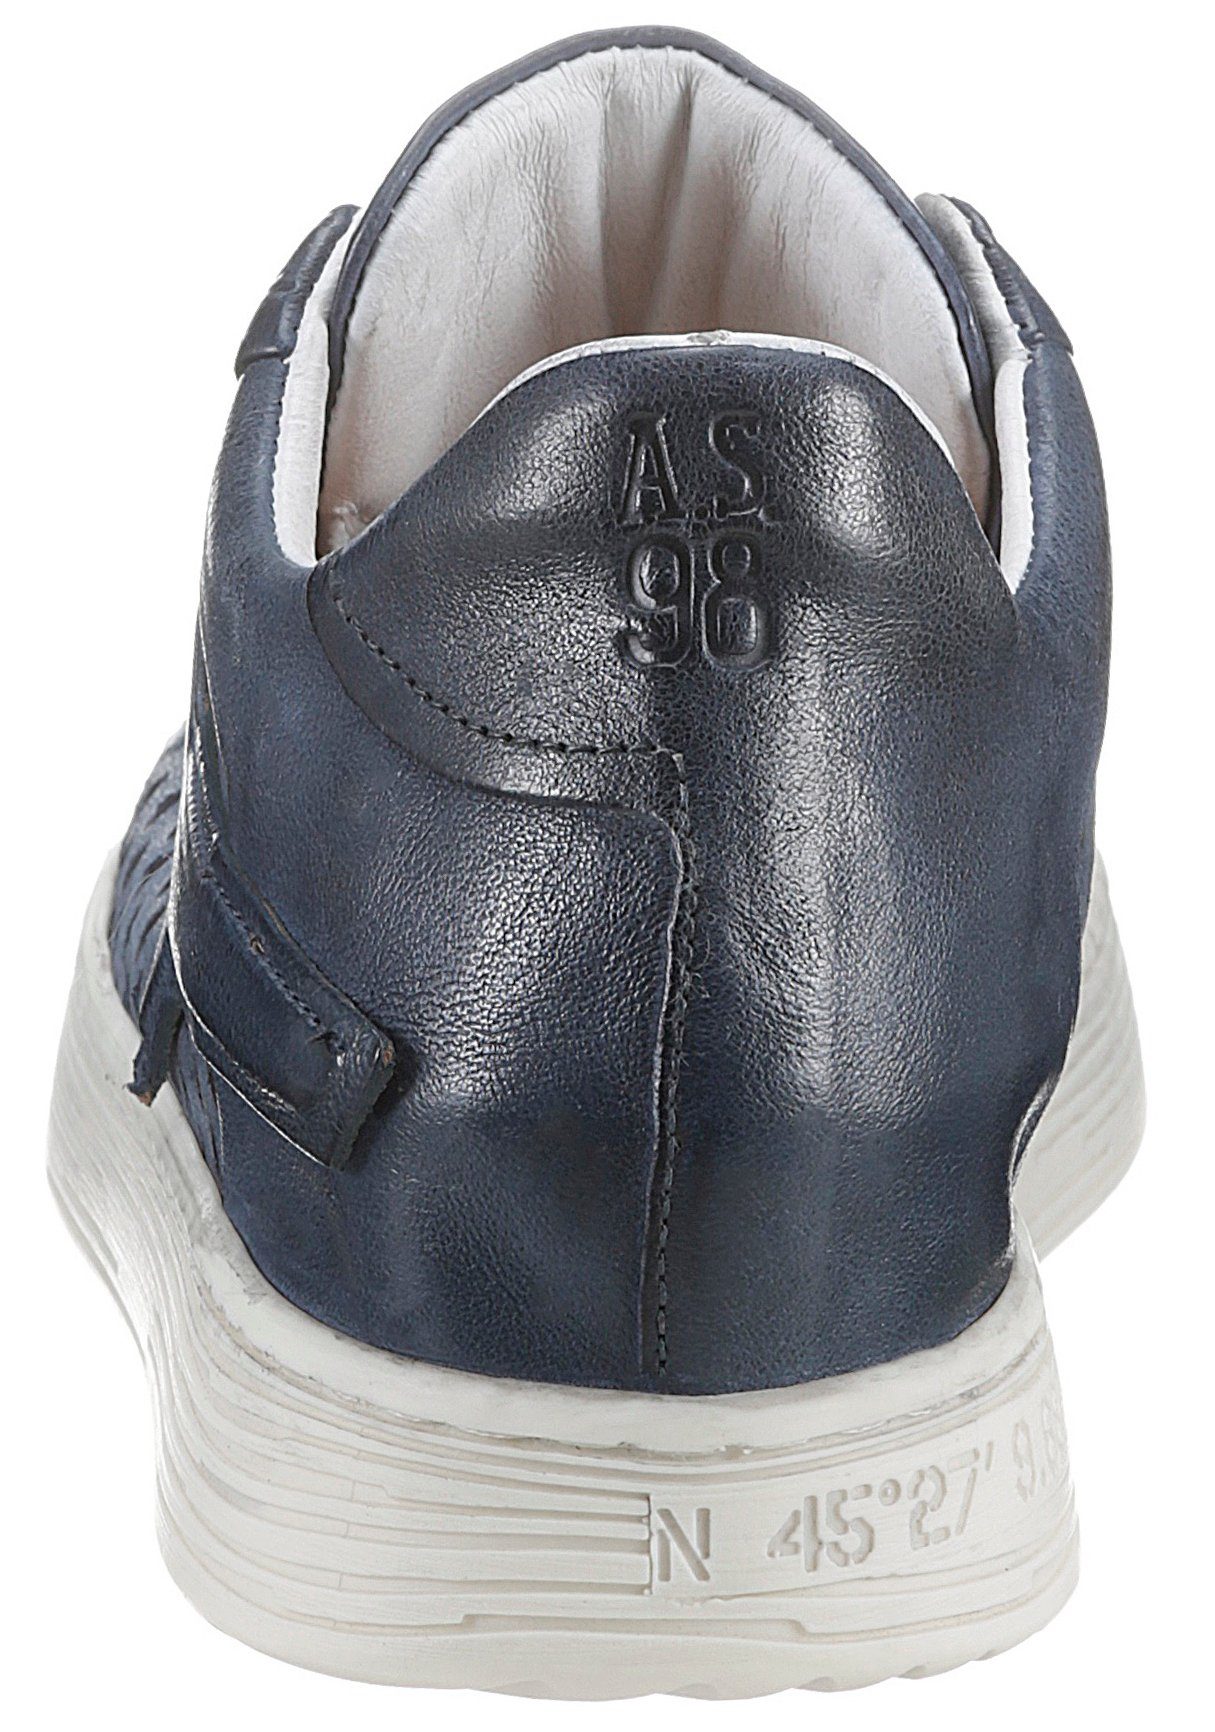 Sneaker A.S.98 used Lochmuster mit ASZEPPA dunkelblau-weiß